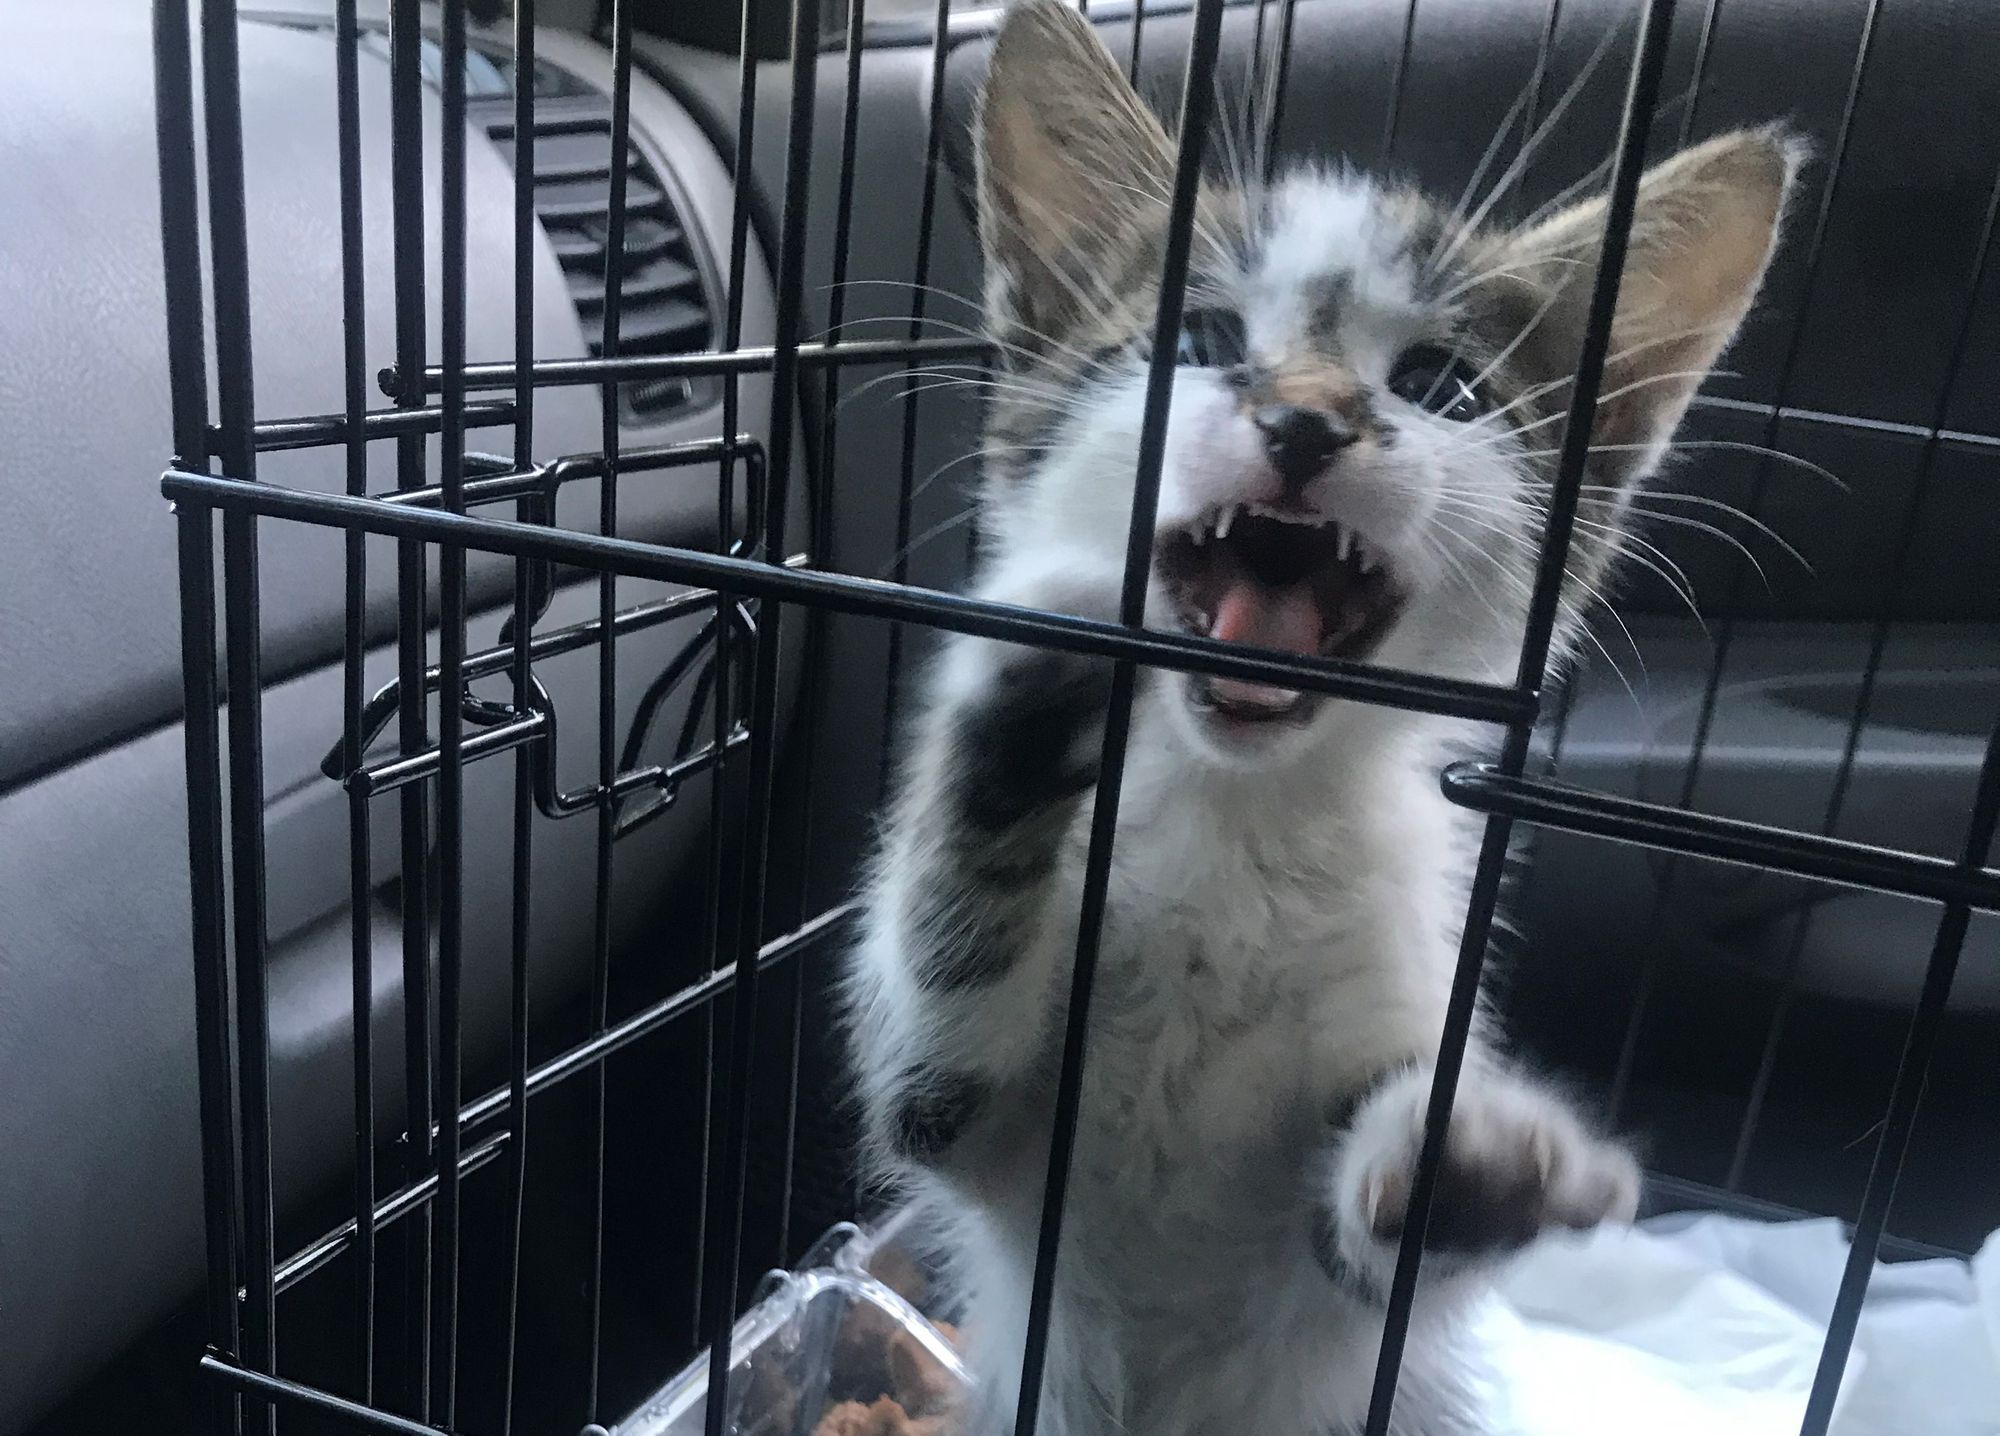 Νευριασμένη γάτα μέσα σε κλουβάκι μεταφοράς σε αυτοκίνητο